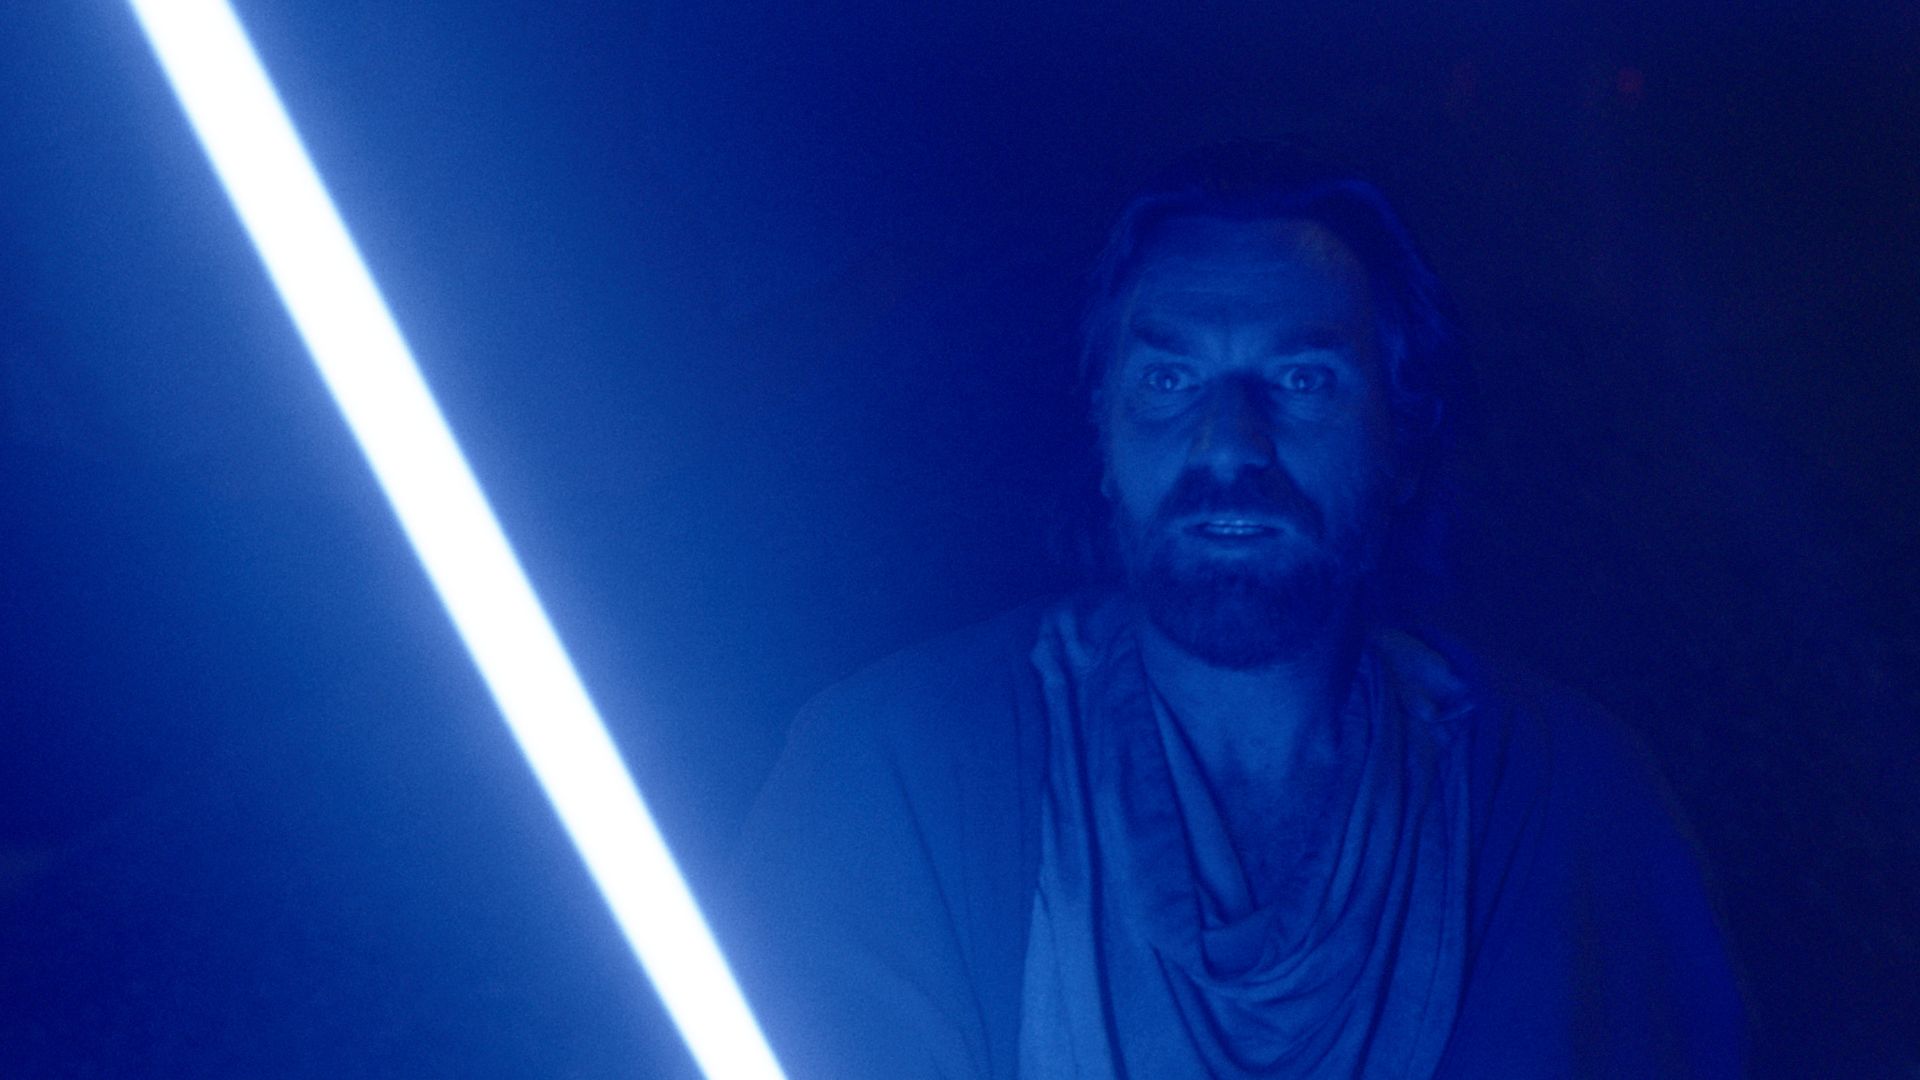 Obi-Wan Kenobi holding his blue lightsaber